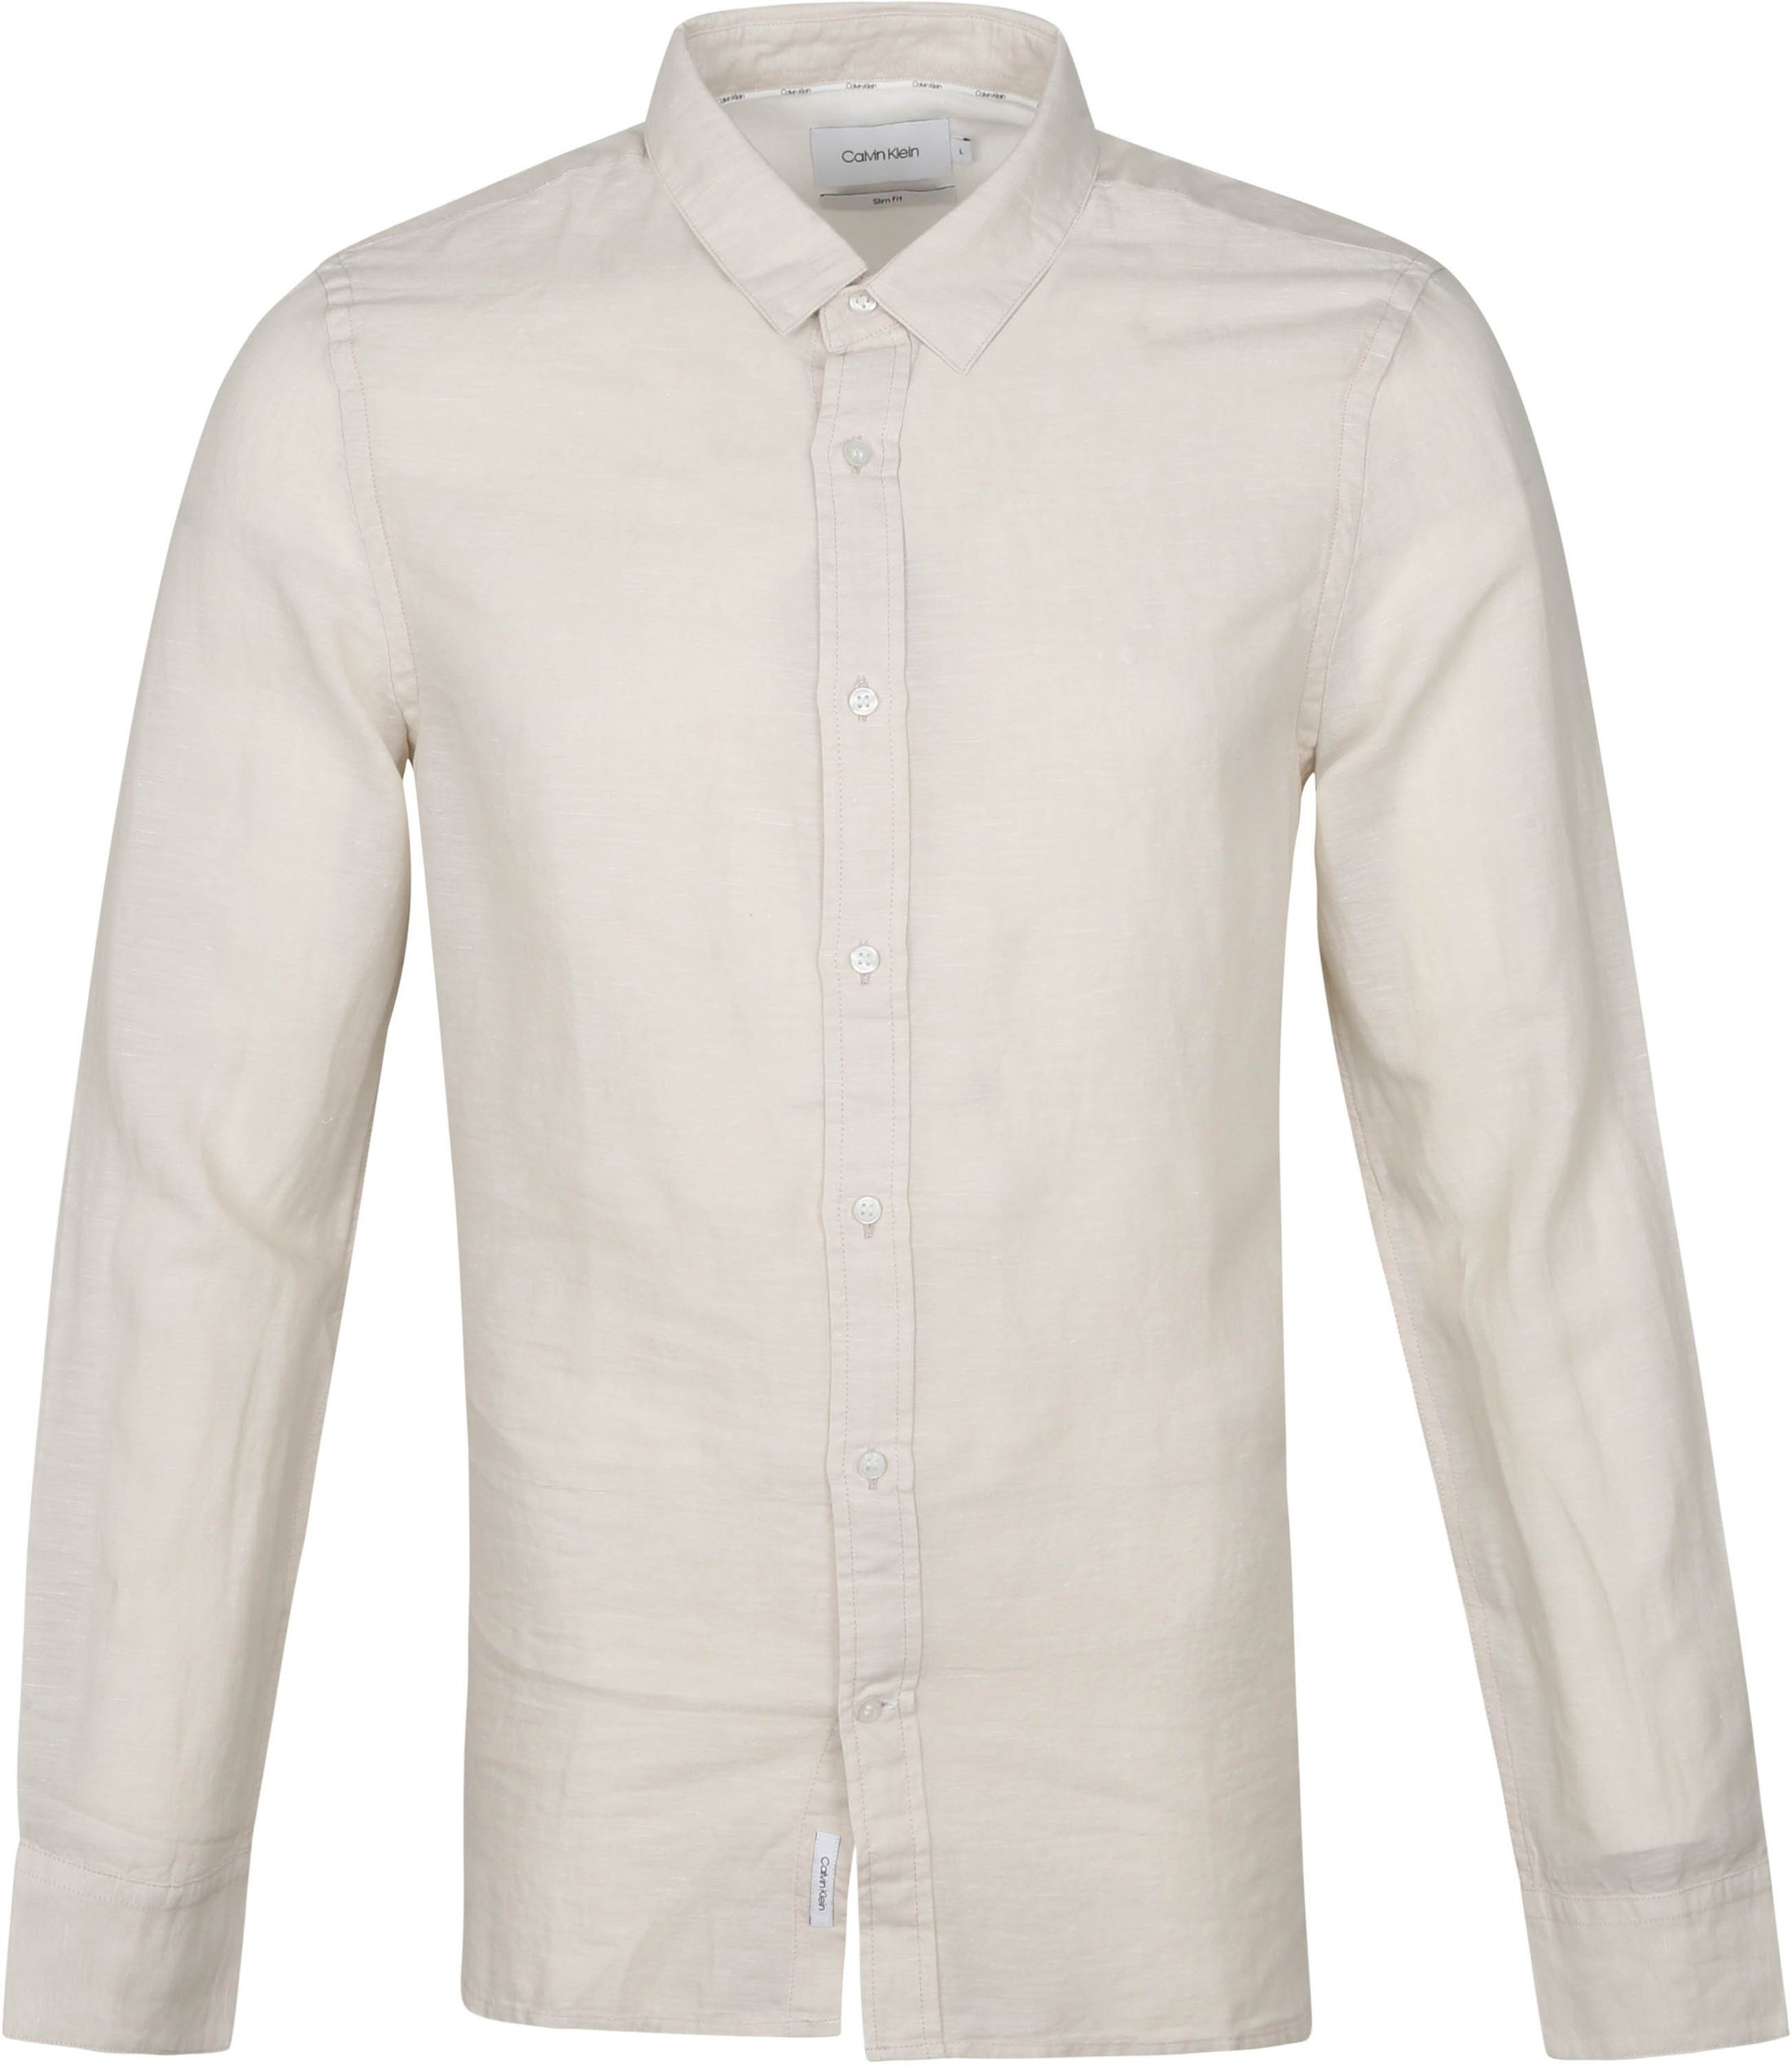 Calvin Klein Shirt Light Grey size XL